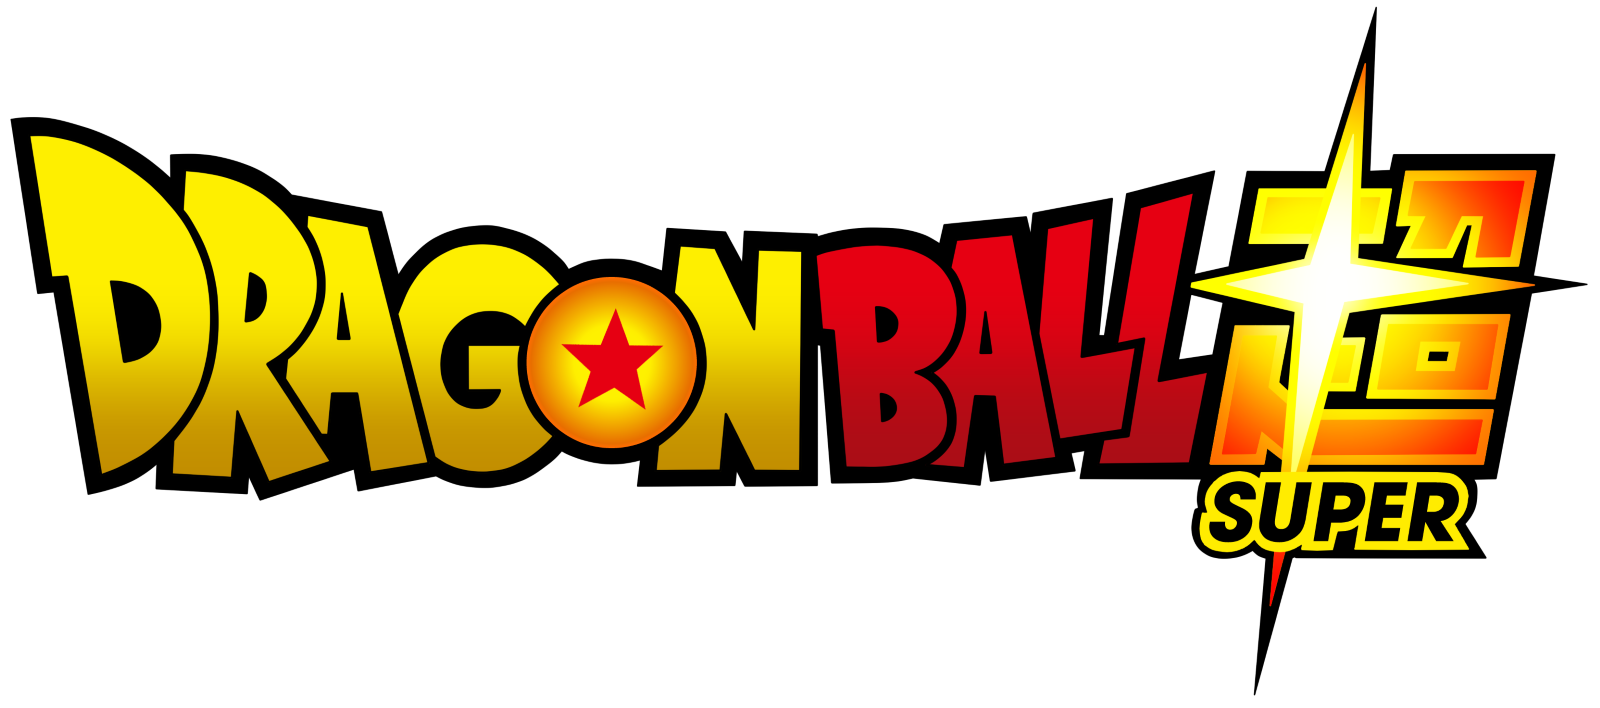 dragon-ball-super-logo-2 - PNG - Download de Logotipos